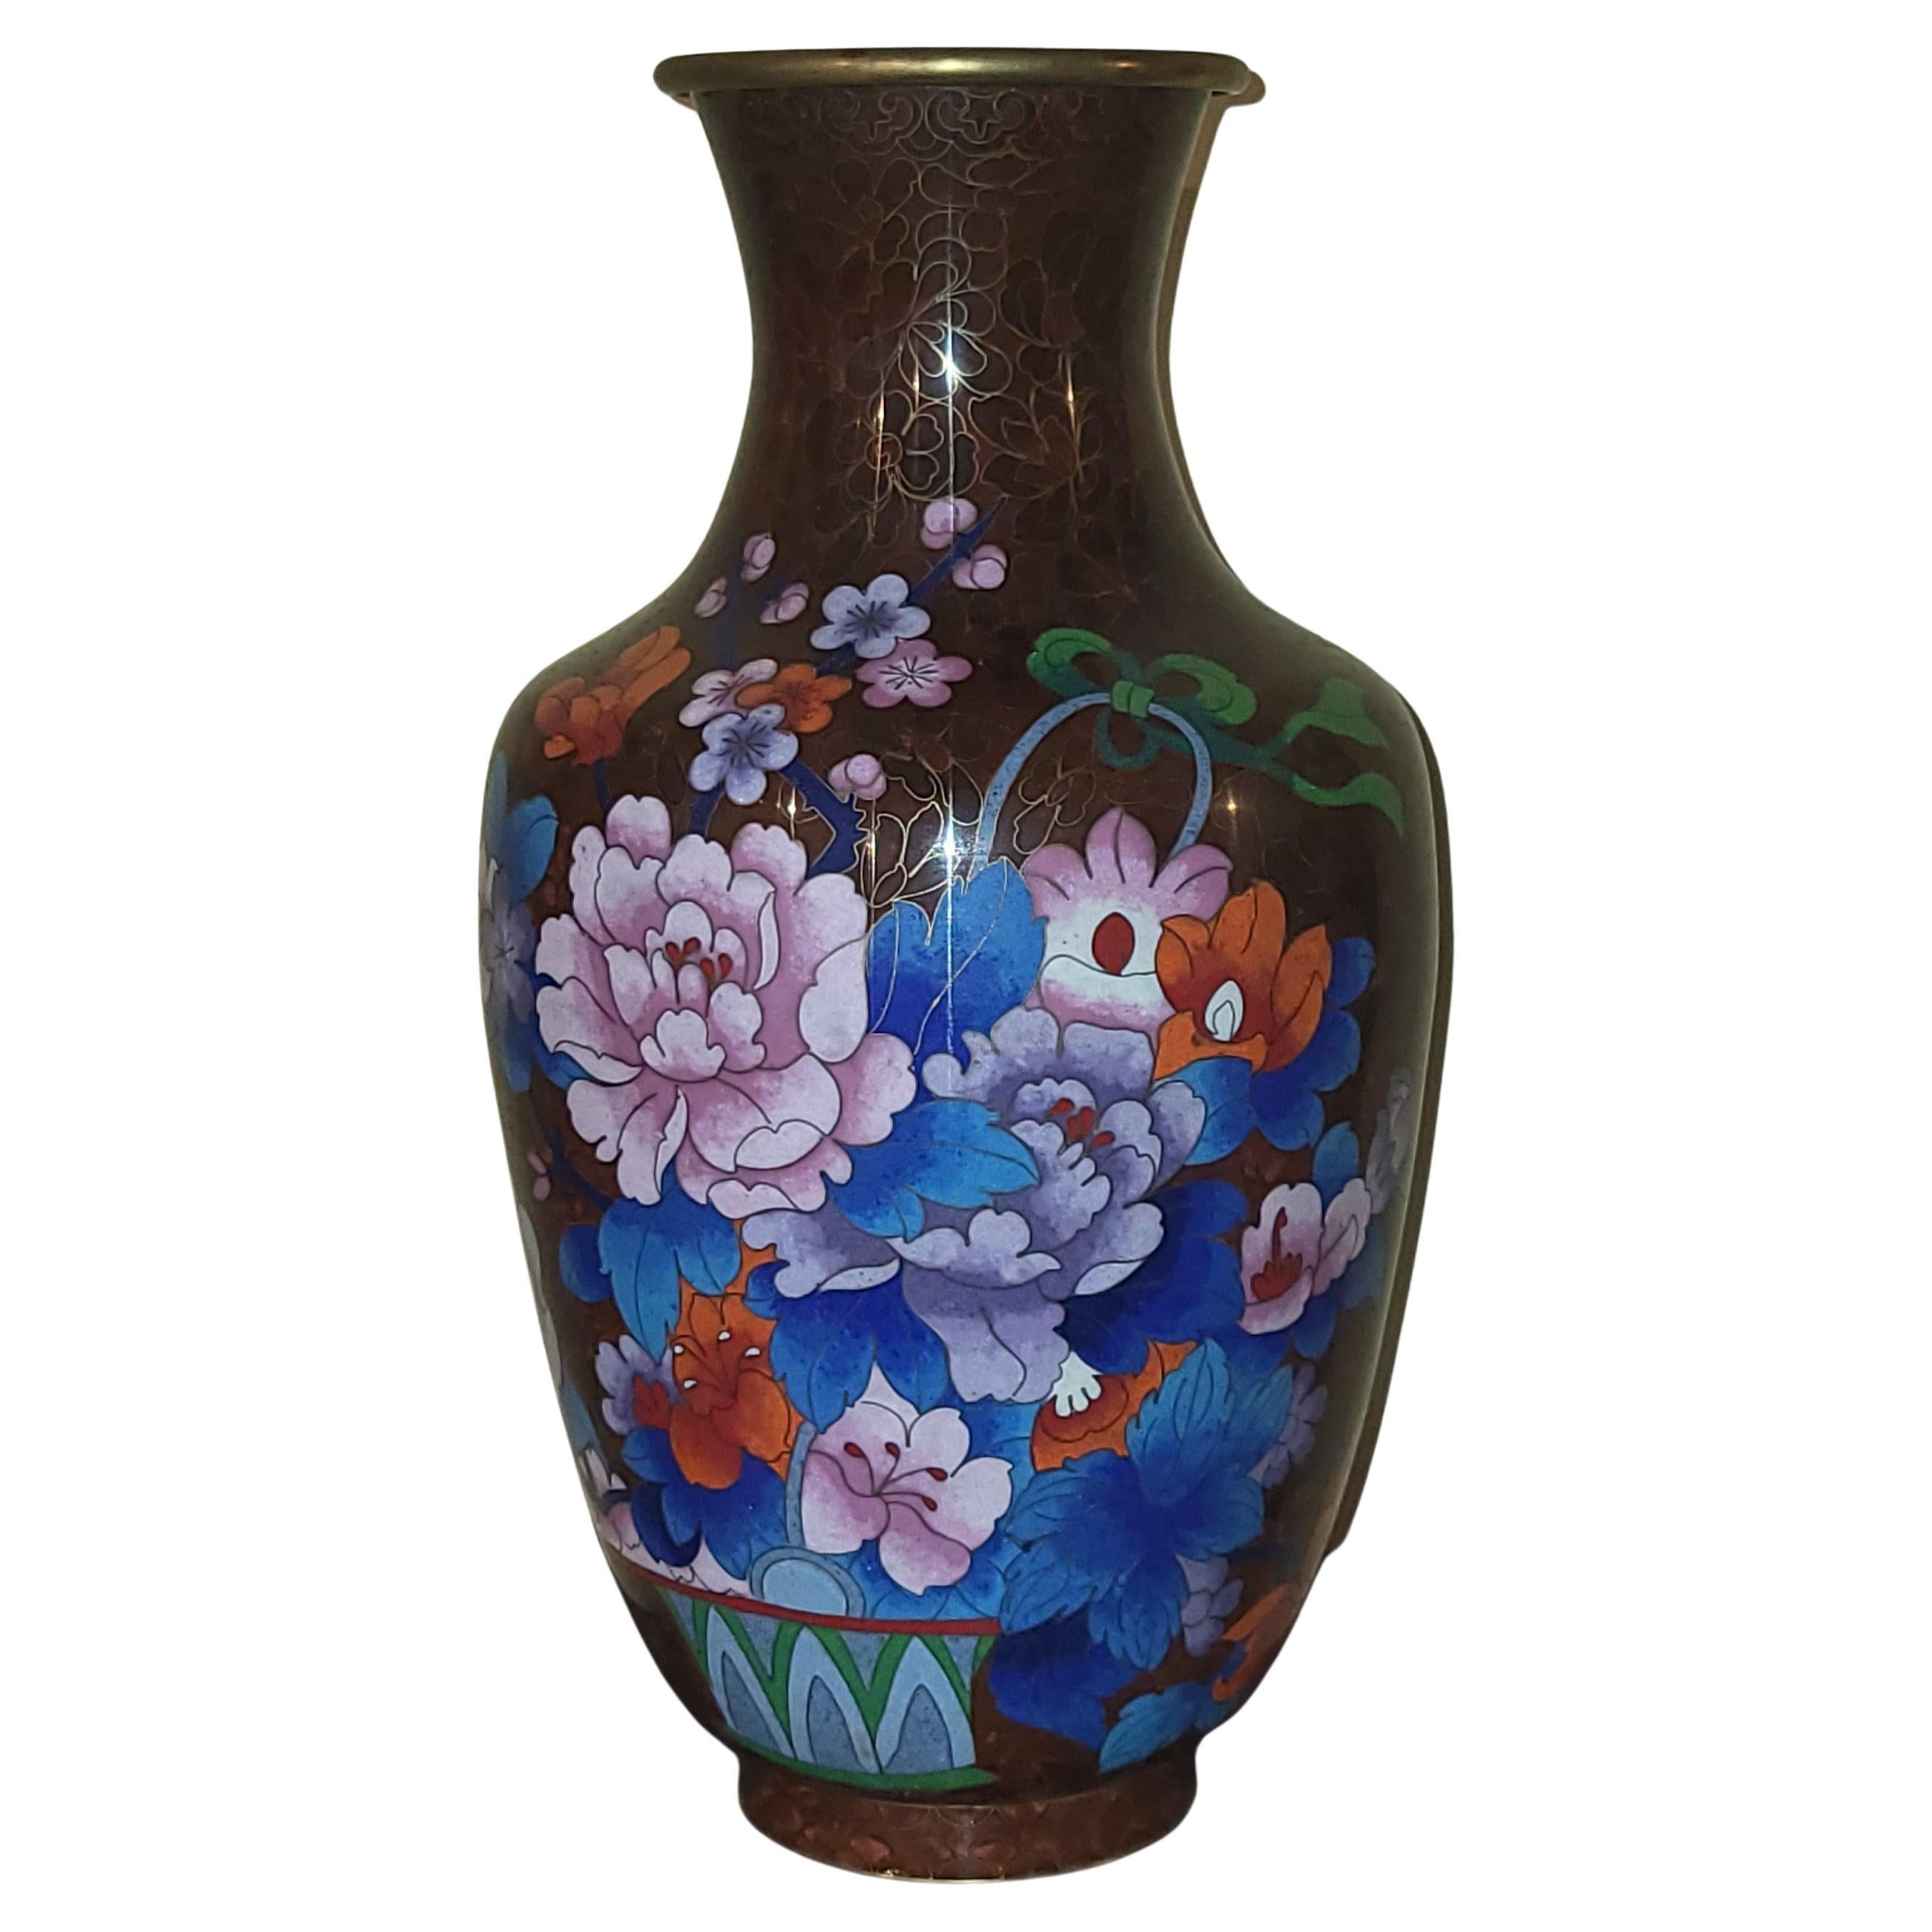 Große Vase aus den Jahren 1950/60 aus China, aus Cloisonné-Materialien auf Cuivre mit einem schönen Blumendekor.
Die farbige Abdeckung aus Laiton erlaubt einen schönen Kontrast zum schokoladenbraunen Fond der Vase, und auch die Blumenfarben kommen